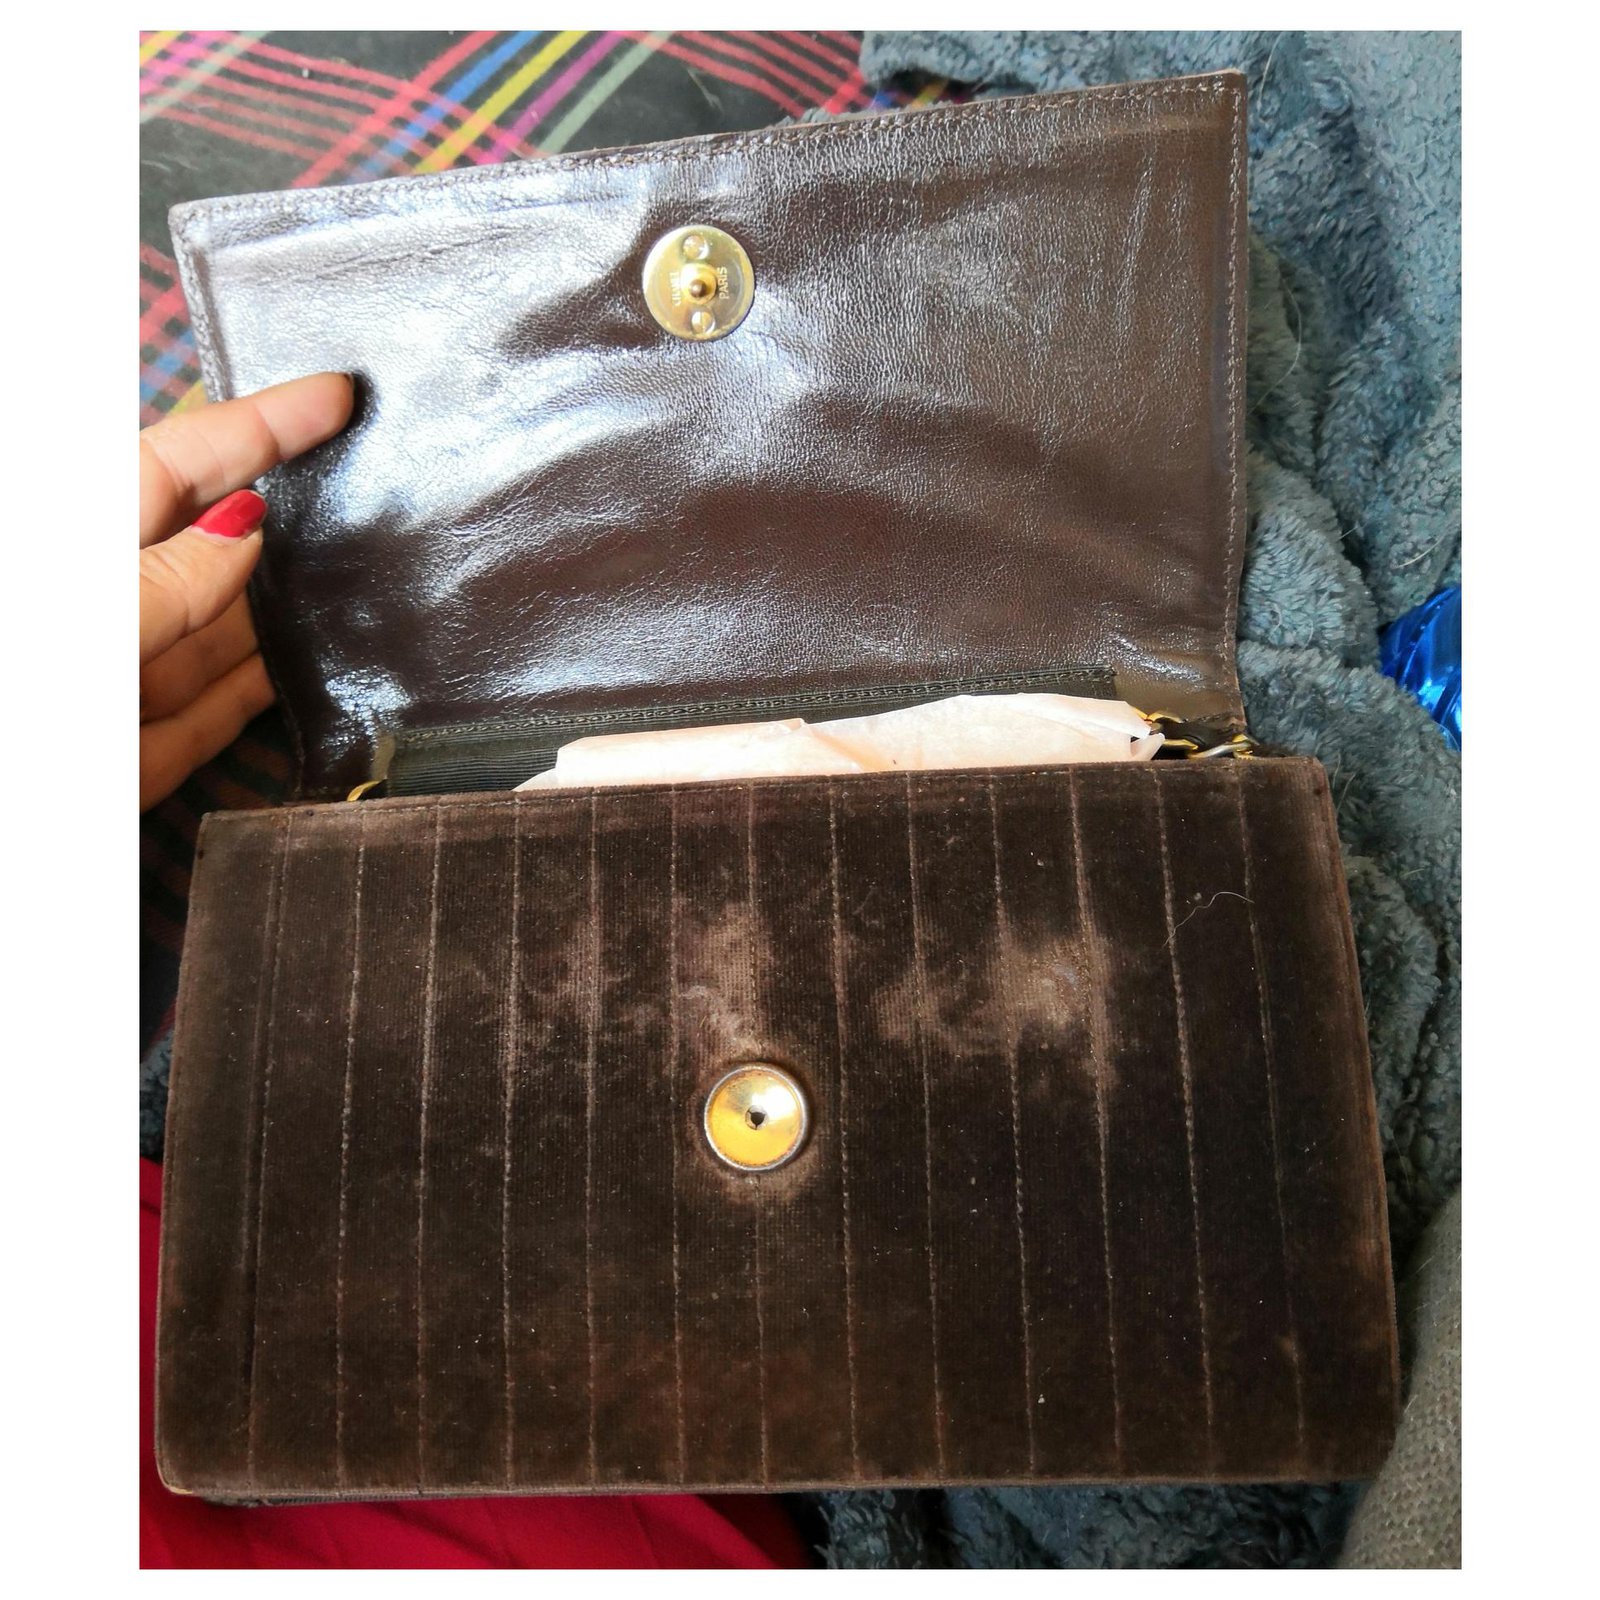 Superb vintage Chanel Wallet on chain bag